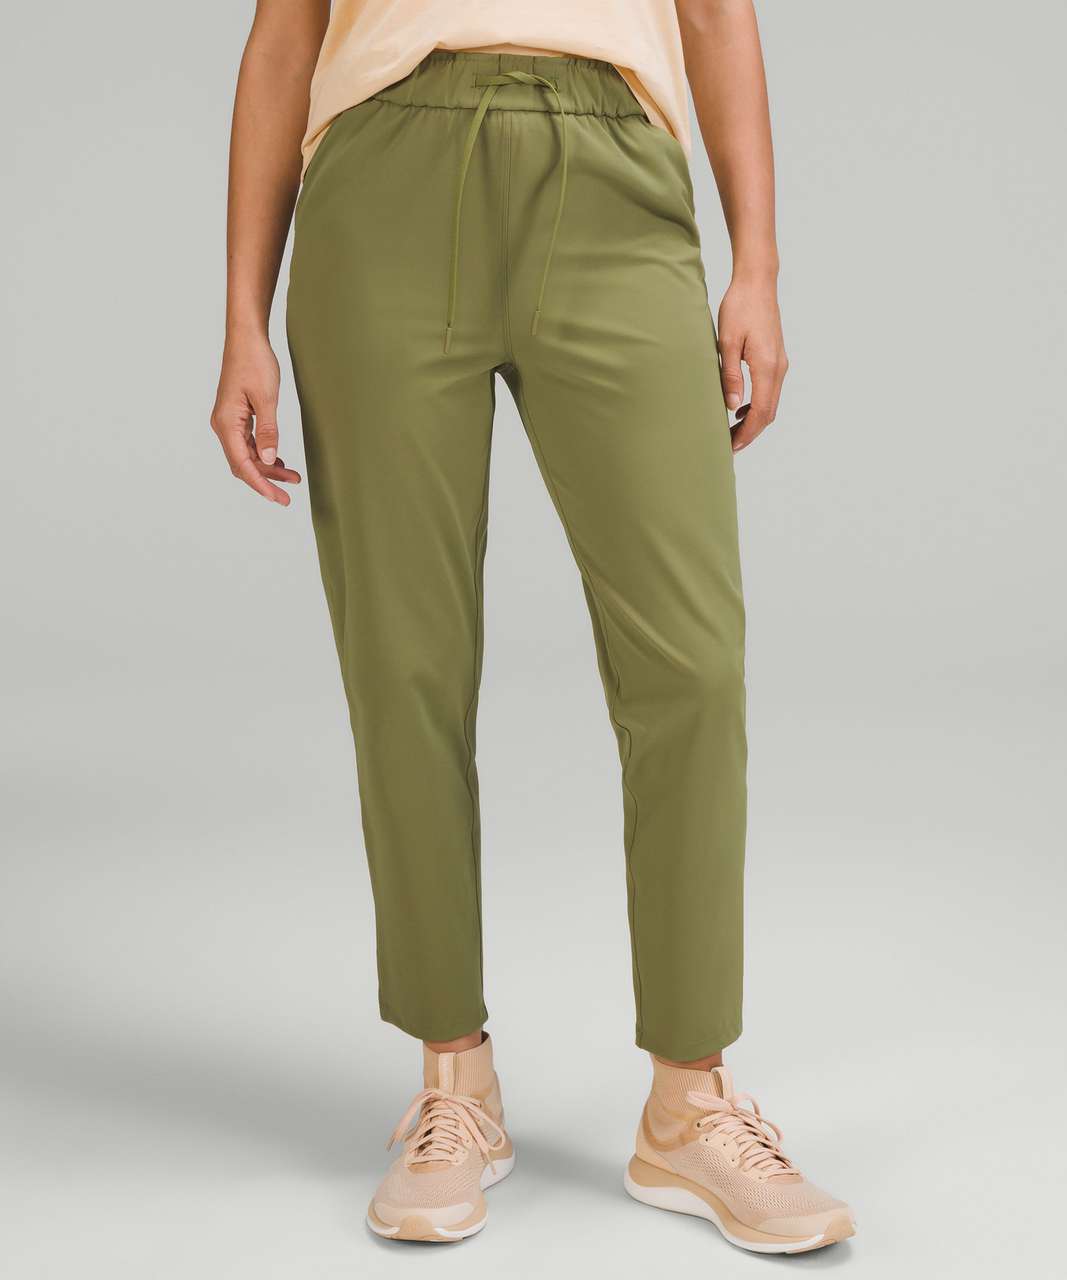 Green Lululemon Pants for Women